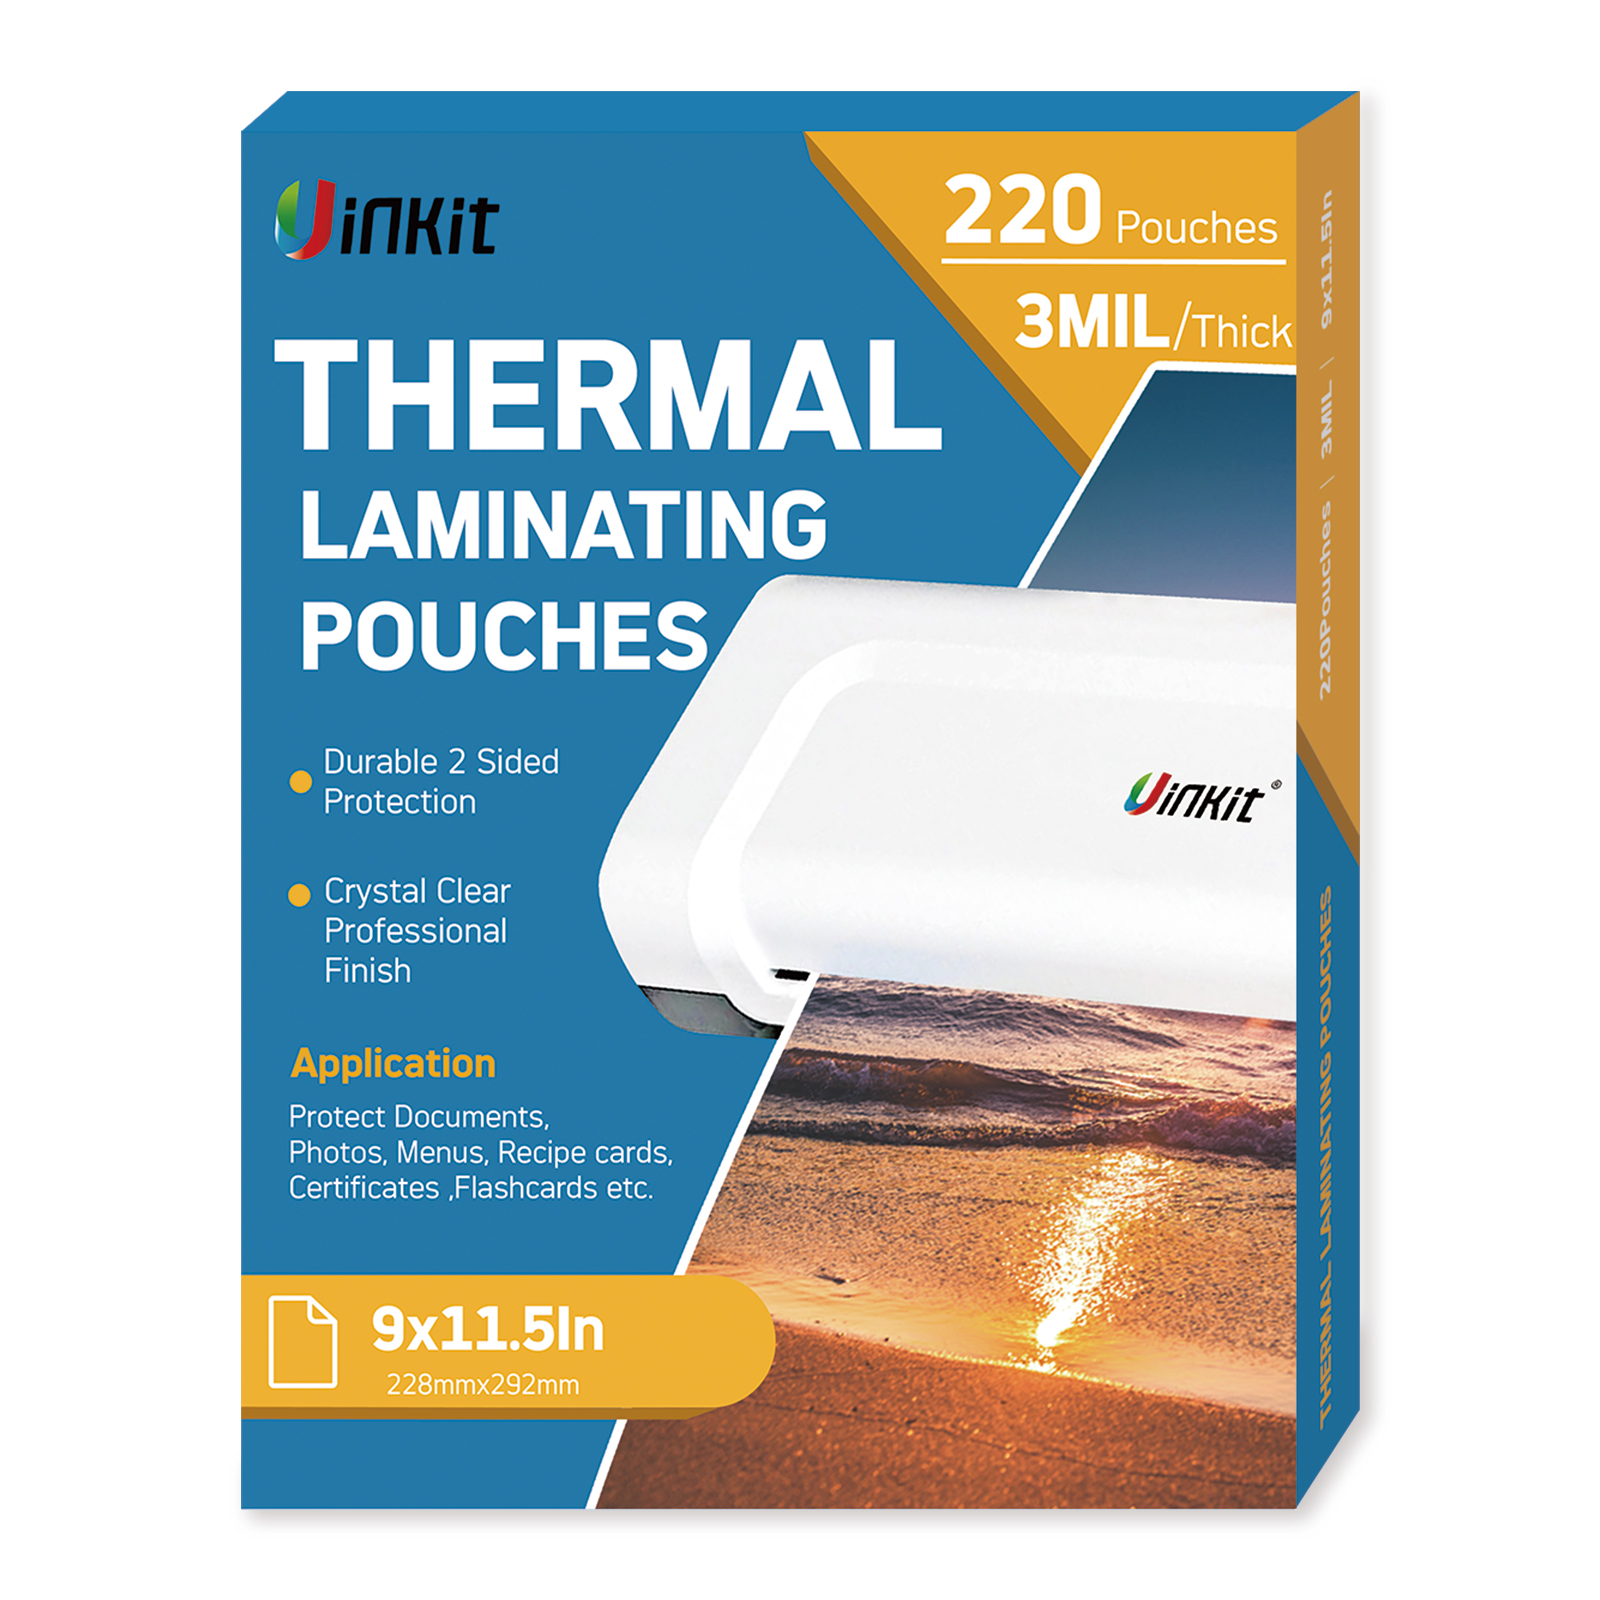 No Heat Laminating Sheets Self Sealing 8.5 x 11 inch, 100 Pack, 4mil Thickness, Transparent, No Machine Self Adhesive Laminating Sheets, Protect